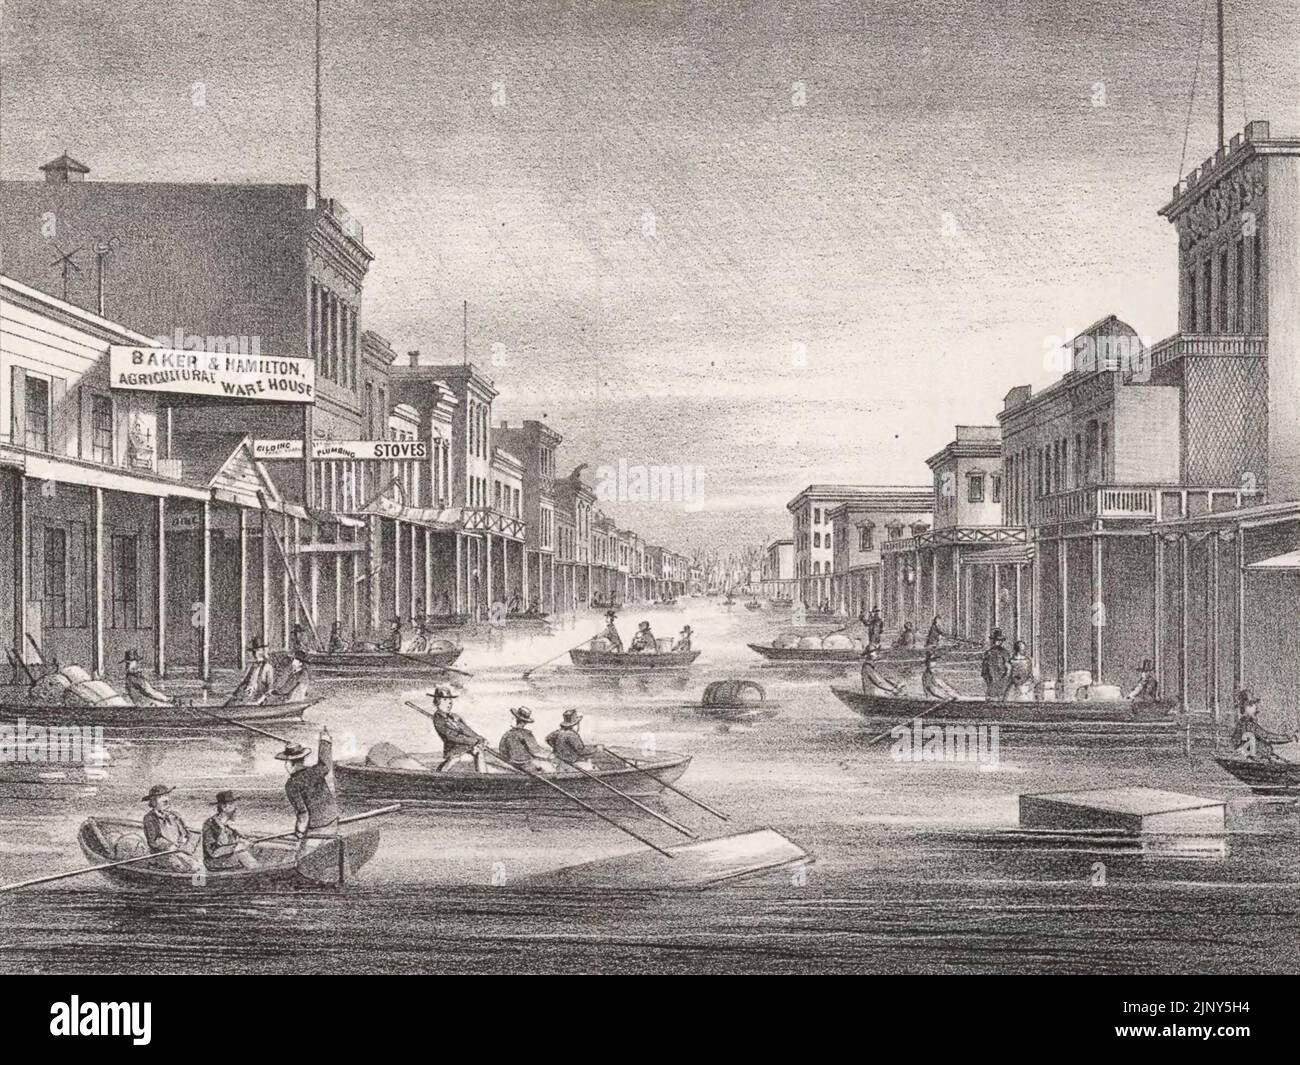 Inondation du capitole de l'État, ville de Sacramento, 1862 - J Street dans le centre-ville de Sacramento vu de Levee montrant une inondation de 1862; les gens dans les bateaux font leur chemin entre les bâtiments dans les rues inondées de ville - California Flood, 1862 Banque D'Images